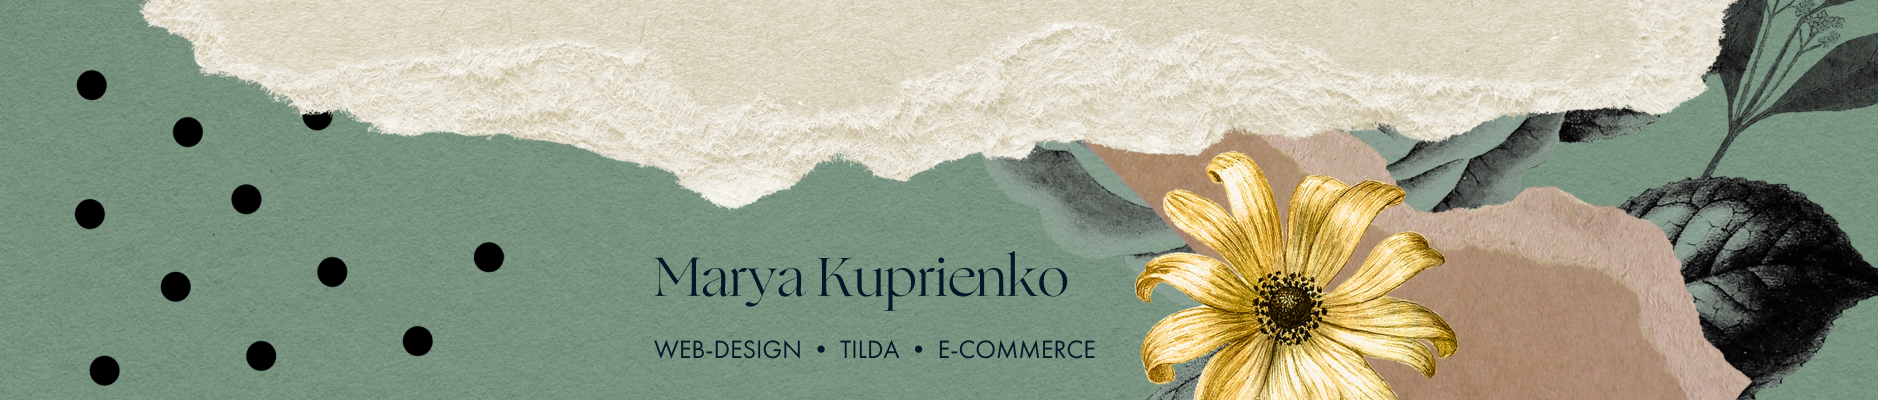 Banner de perfil de Maria Kuprienko